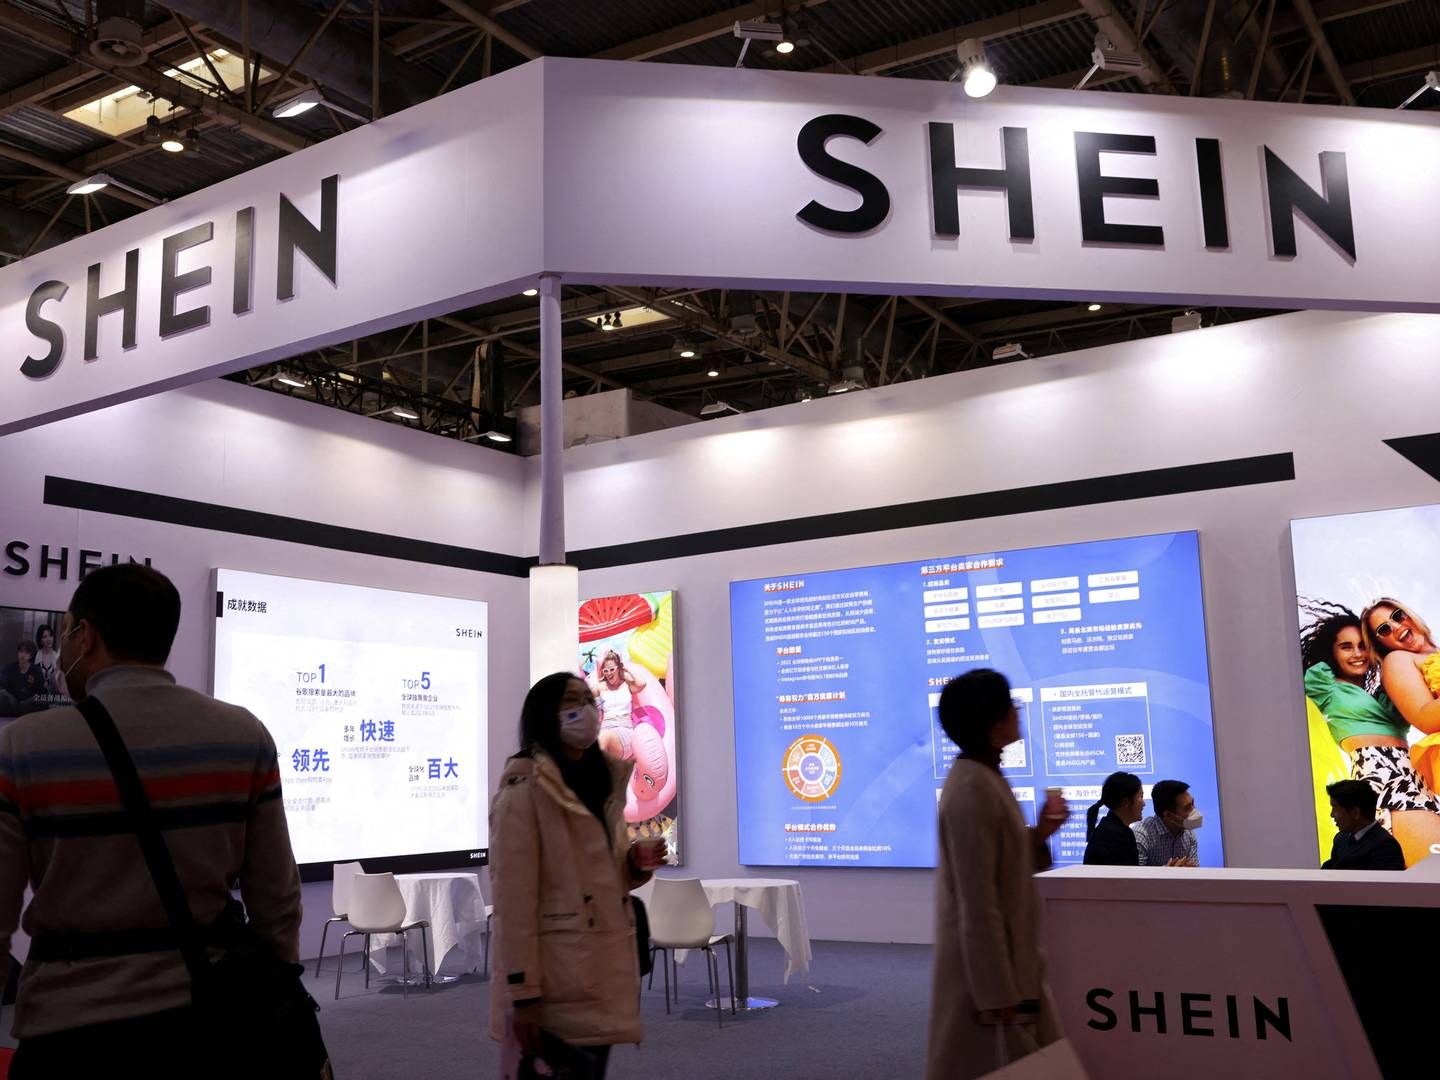 Shein jagter en børsnotering i London, selvom selskabets førstevalg ville være New York. | Foto: Florence Lo